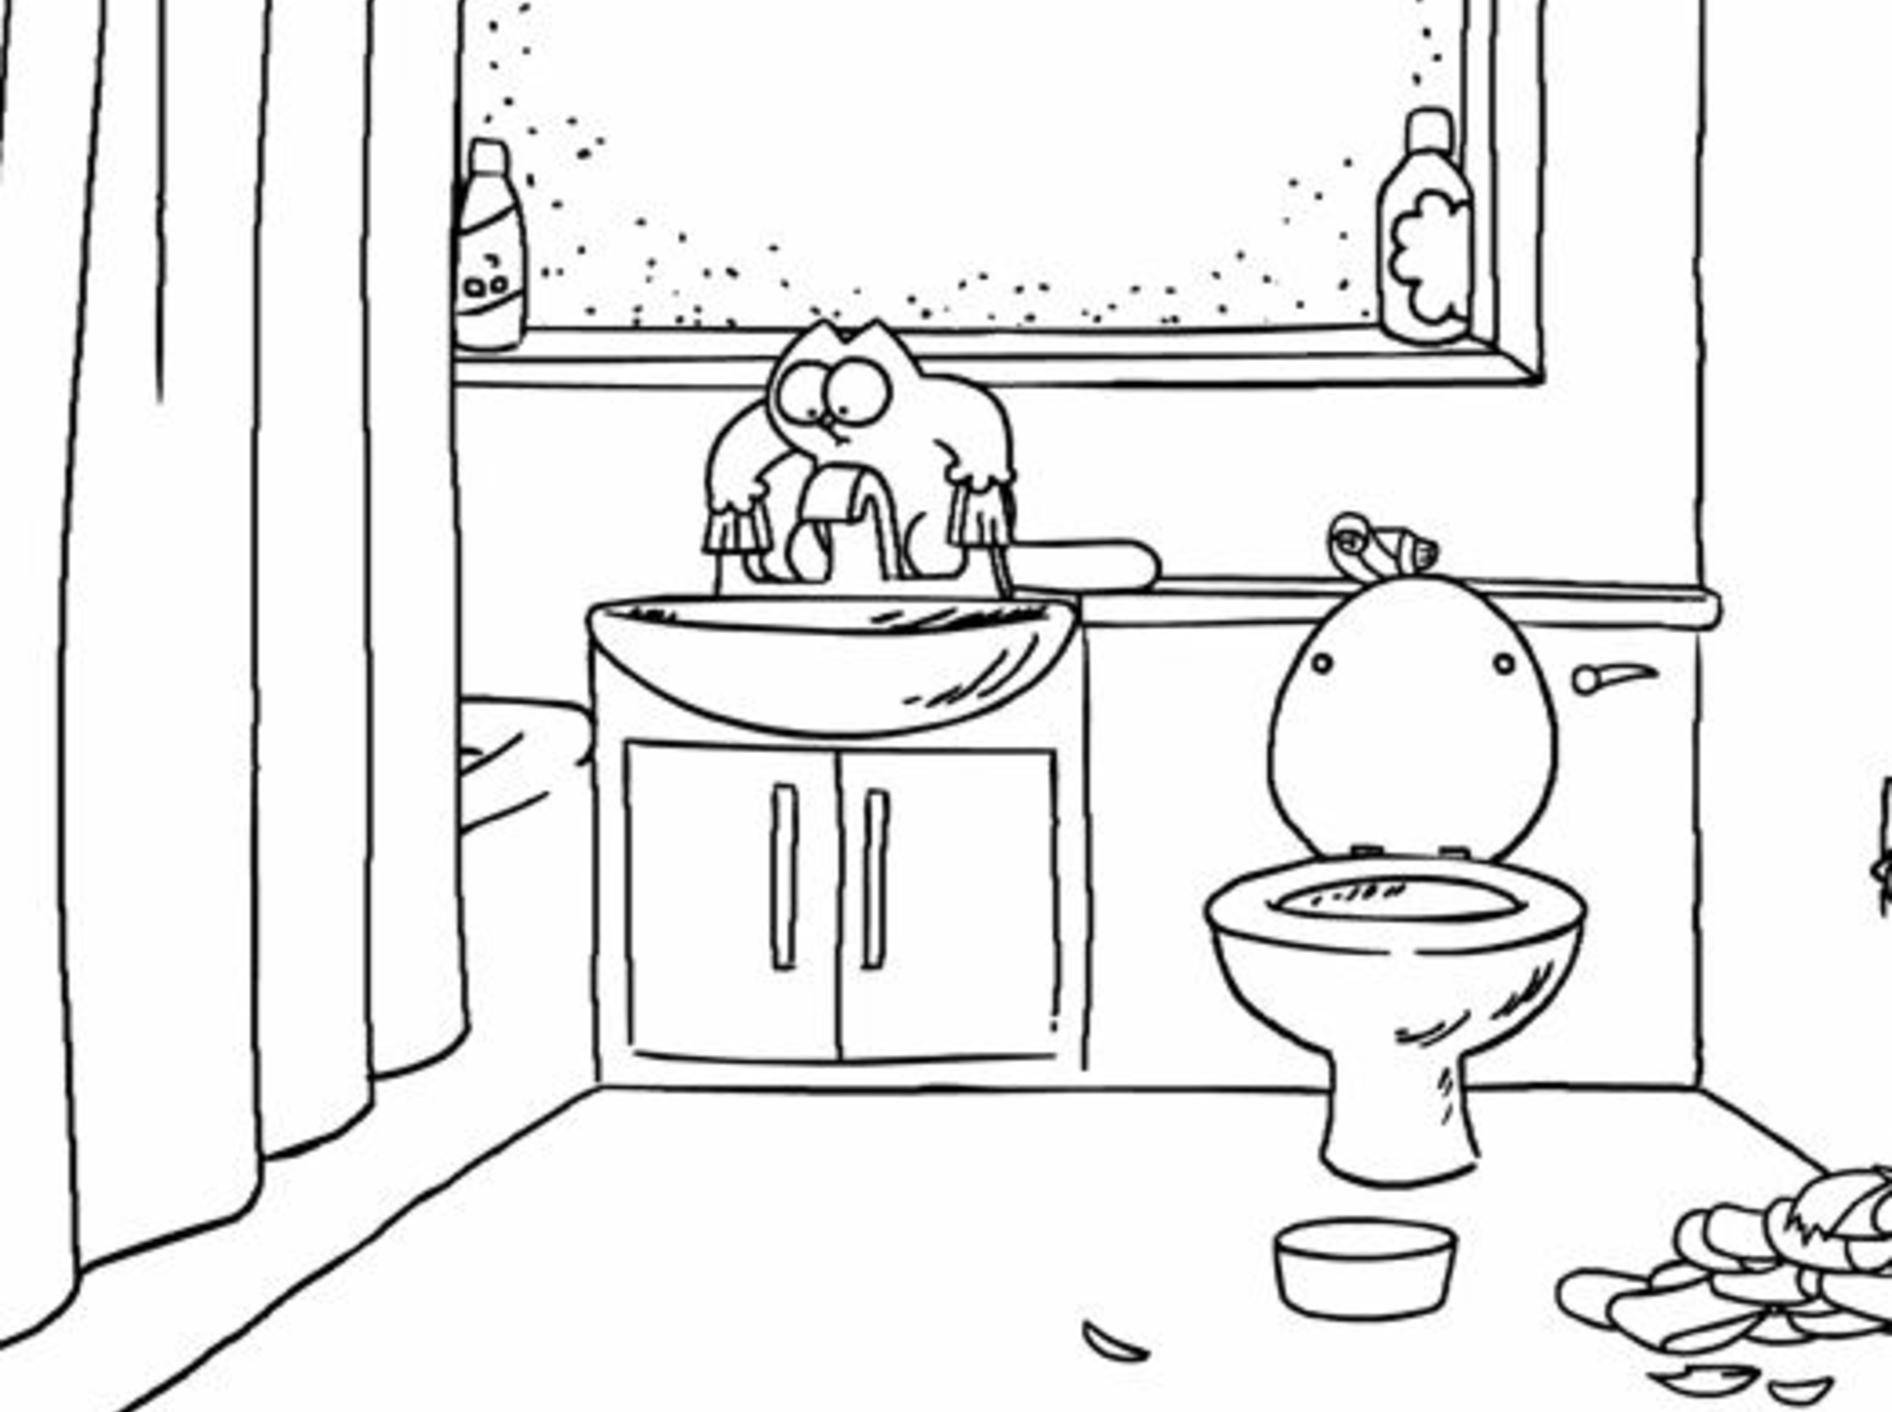 Simon's Cat im Badezimmer: Das Spiel mit dem Wasser – Bild: YouTube / Simon's Cat